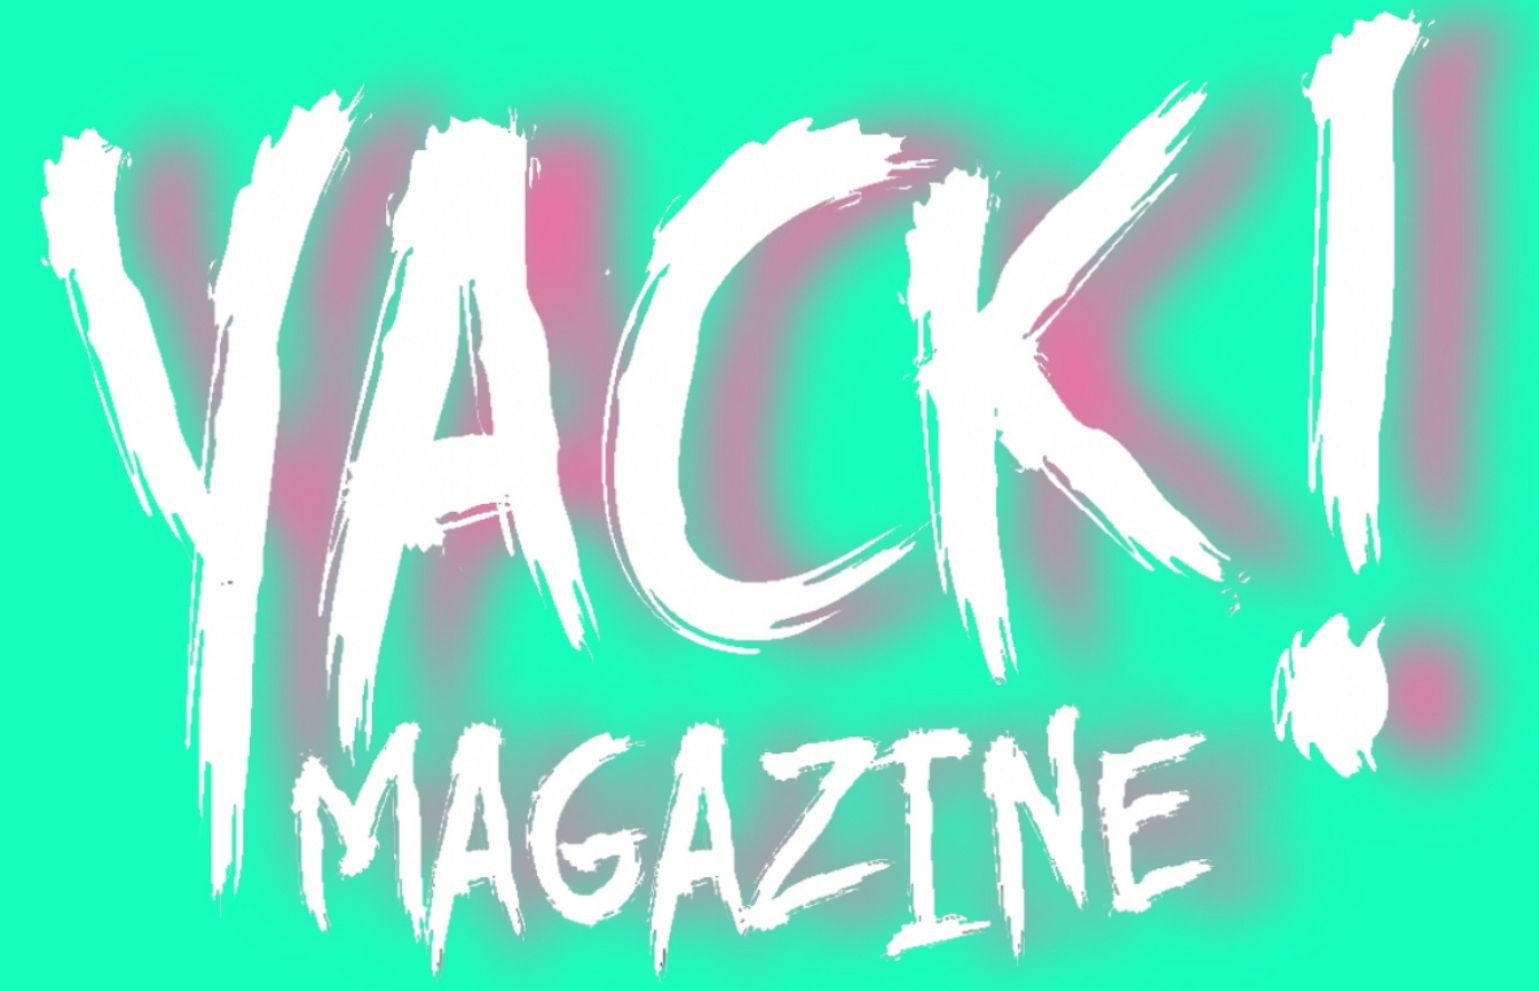 Yack Magazine!